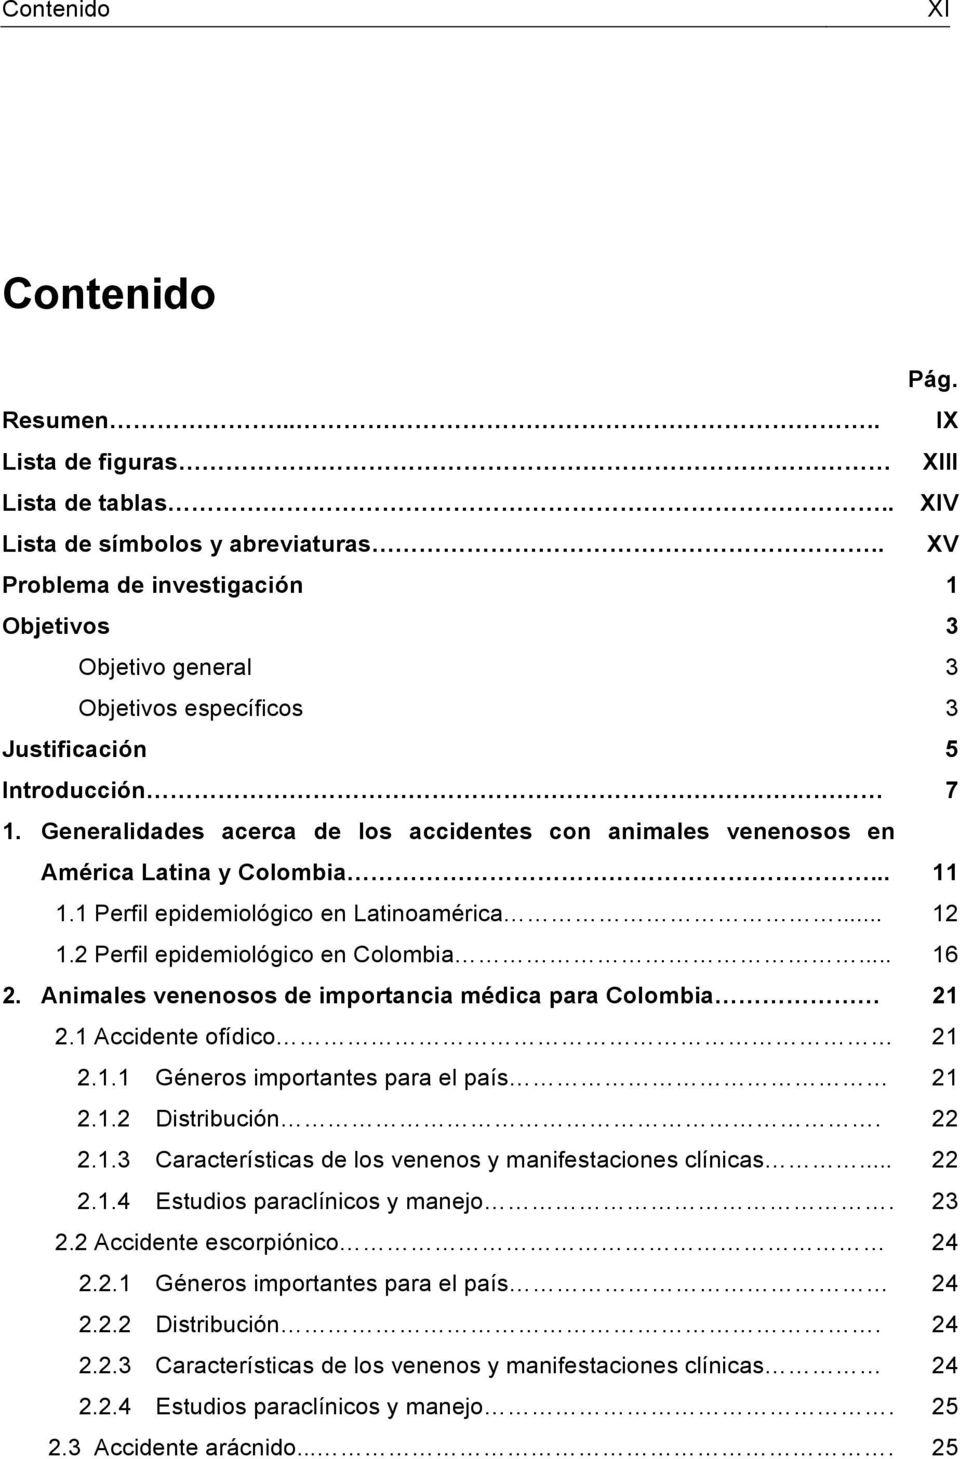 .. 1.1 Perfil epidemiológico en Latinoamérica... 1.2 Perfil epidemiológico en Colombia... 2. Animales venenosos de importancia médica para Colombia 2.1 Accidente ofídico 2.1.1 Géneros importantes para el país 2.